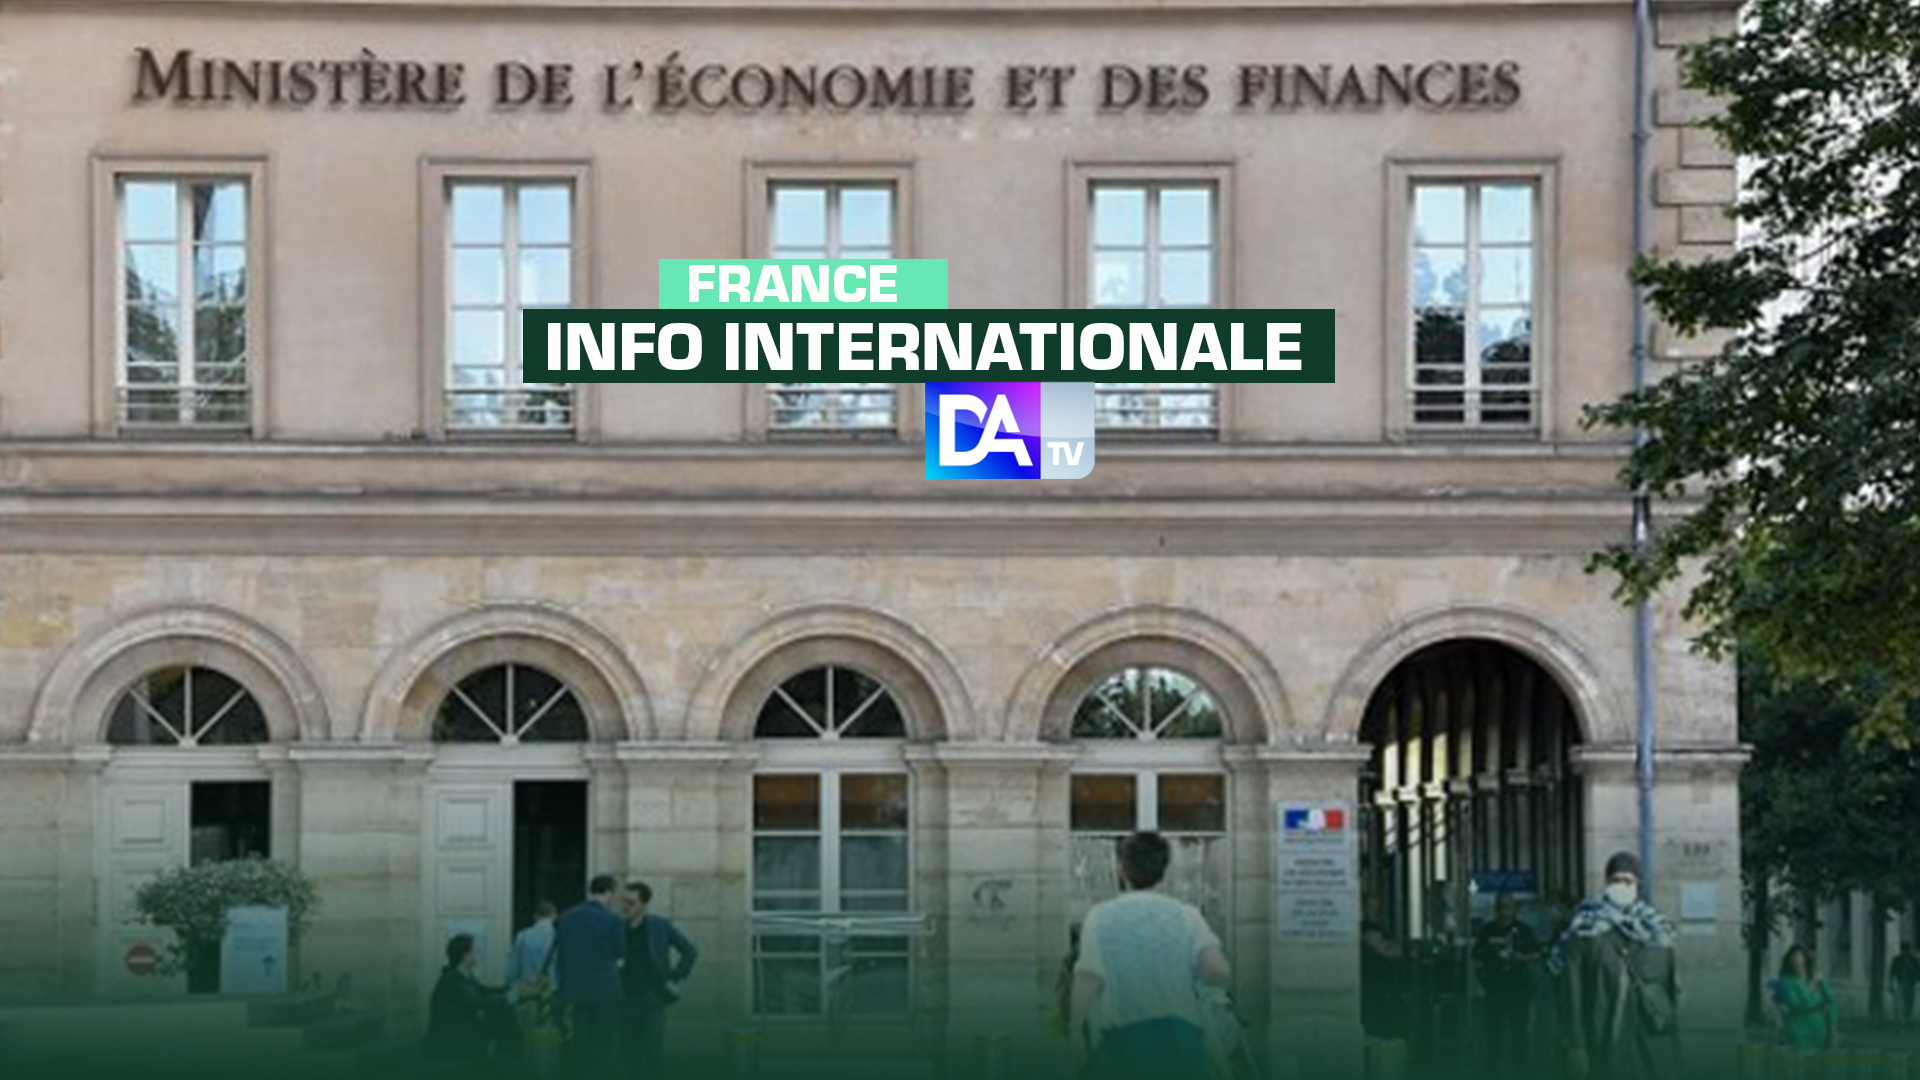 France / Fonds de solidarité Covid-19 : 2.542 fraudeurs fiscaux décelés, 10 milliards économisés grâce aux vérifications, environ 70 millions € indus récupérés par la DGFiP française.